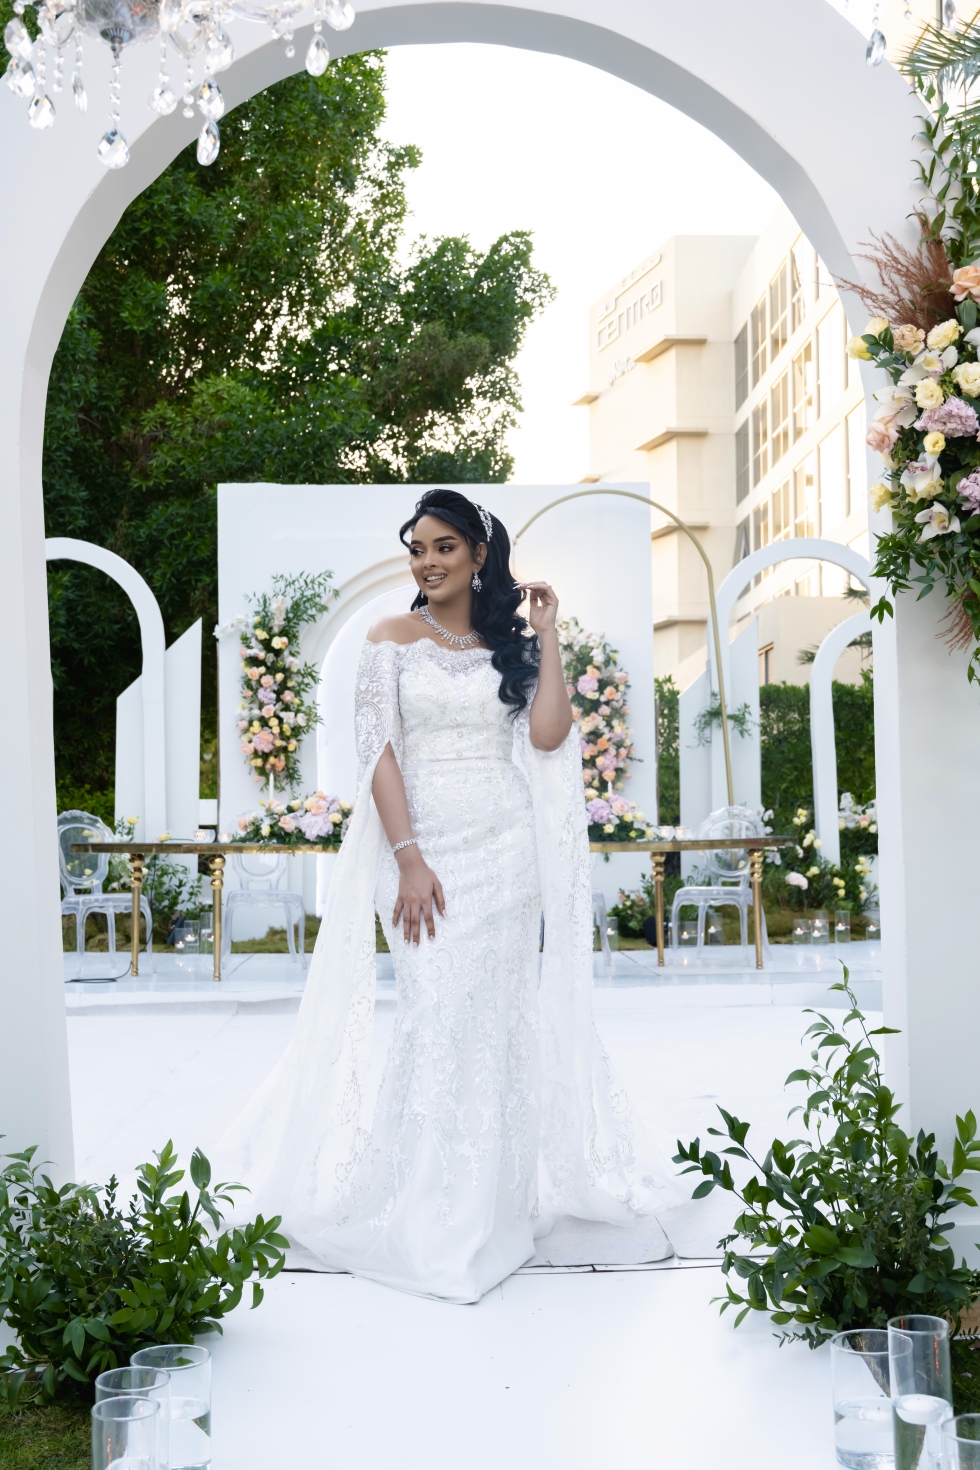 حفل زفاف يجمع بين الأناقة السودانية والفخامة الإماراتية في دبي